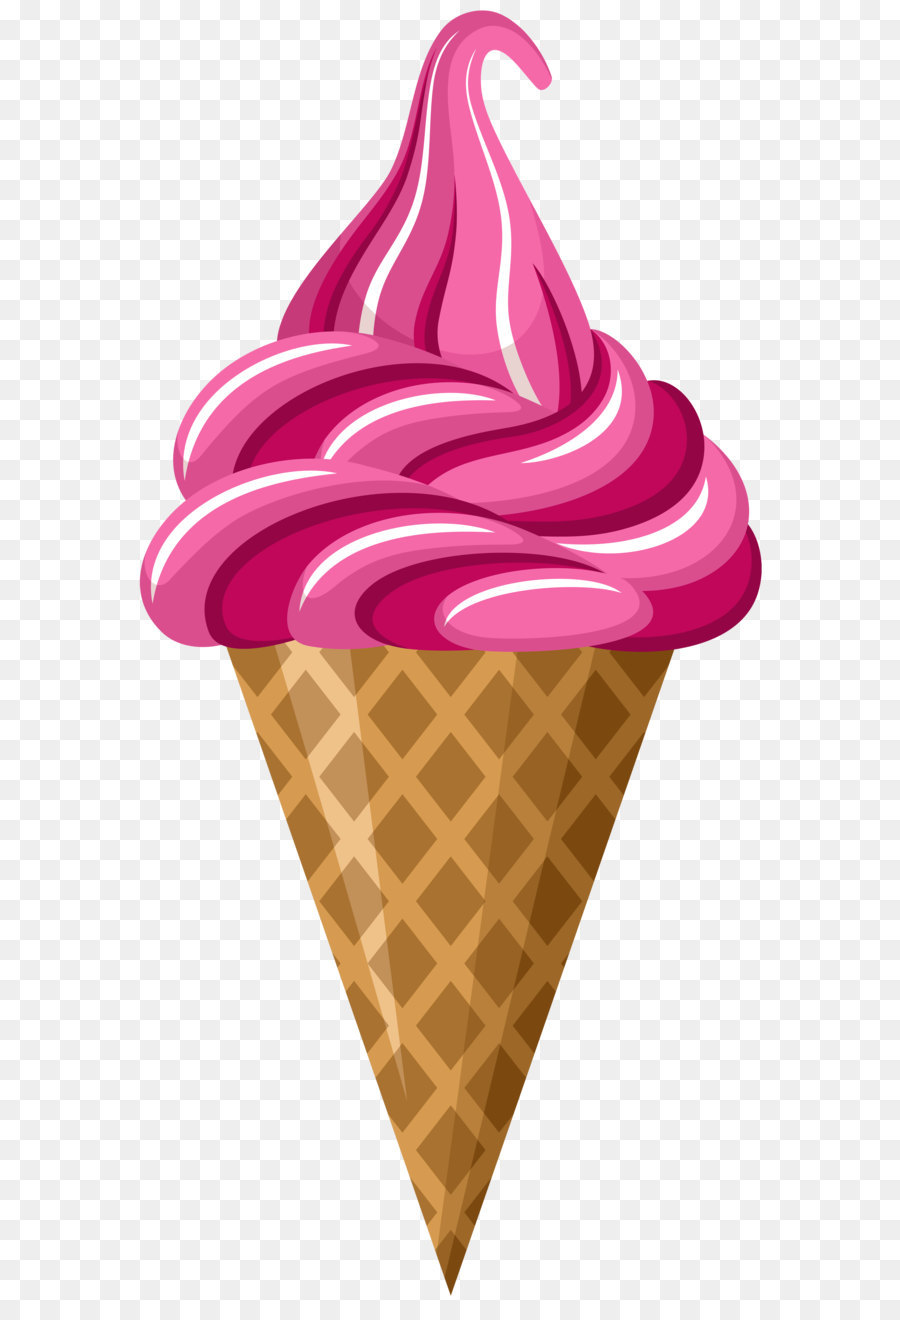 Ice cream cone Strawberry ice cream Clip art - Pink Ice Cream Cone PNG Clip Art Image png download - 3990*8000 - Free Transparent Ice Cream png Download.